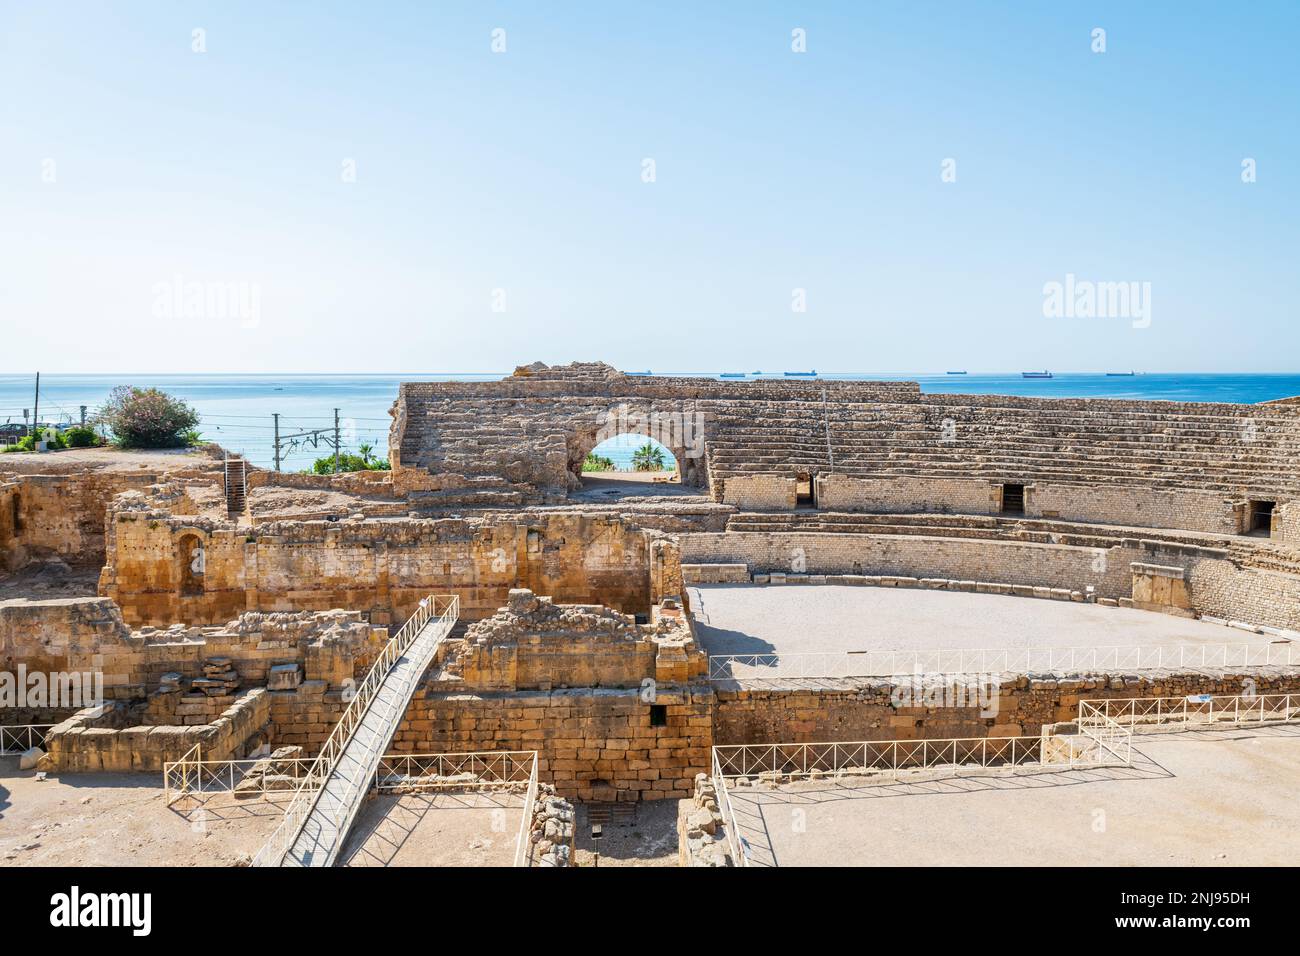 Weitwinkelblick auf die Ruinen des römischen Amphitheaters in Tarragona, erbaut im 2. Jahrhundert v. Chr., mit dem Mittelmeer im Hintergrund. Stockfoto